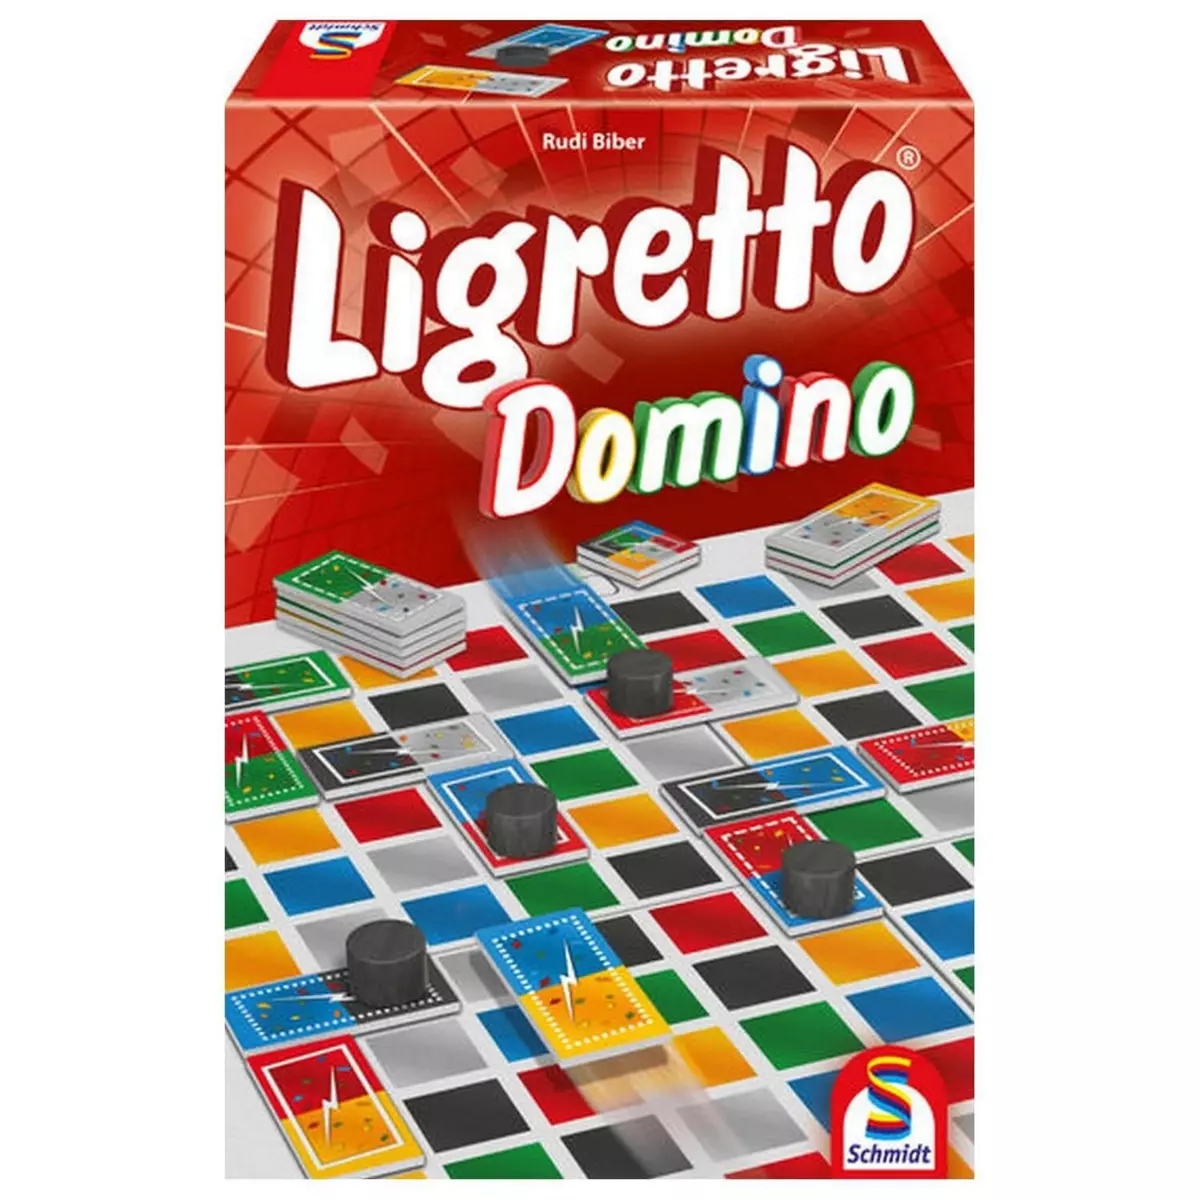 Schmidt Ligretto Domino